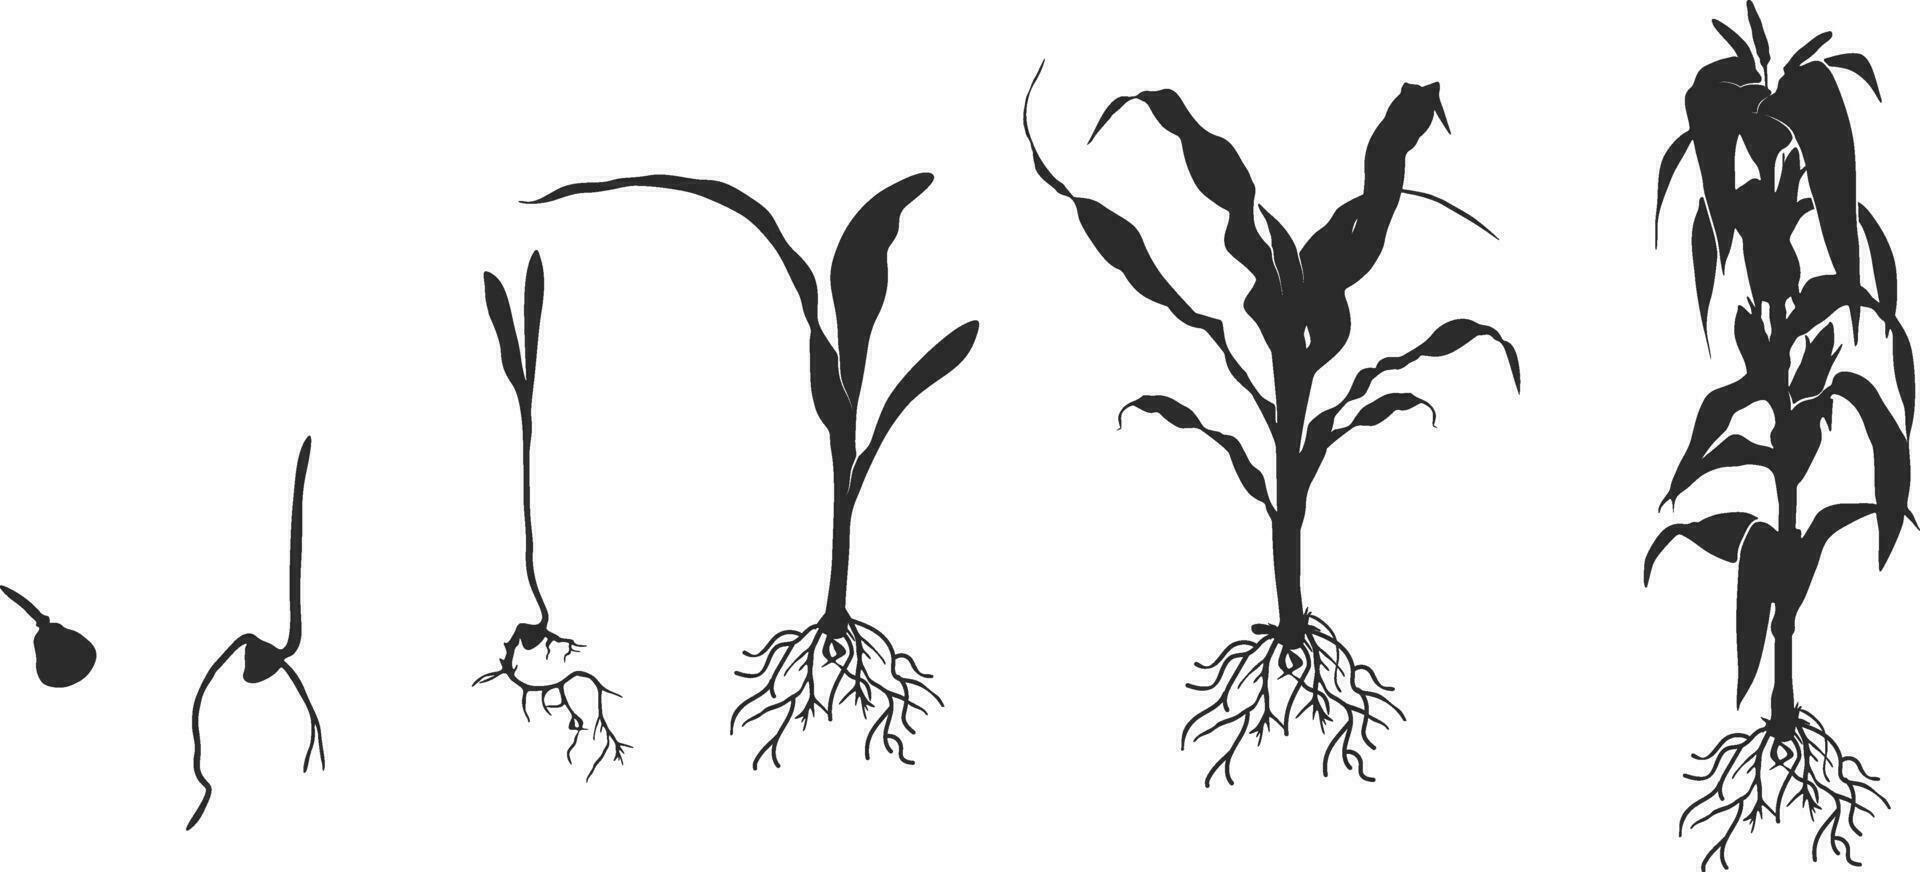 vida ciclo de maíz maíz planta silueta, ciclo de crecimiento de maíz negro silueta, maíz vida ciclo silueta, maíz semilla creciente silueta, proceso de creciente maíz en agricultura vector